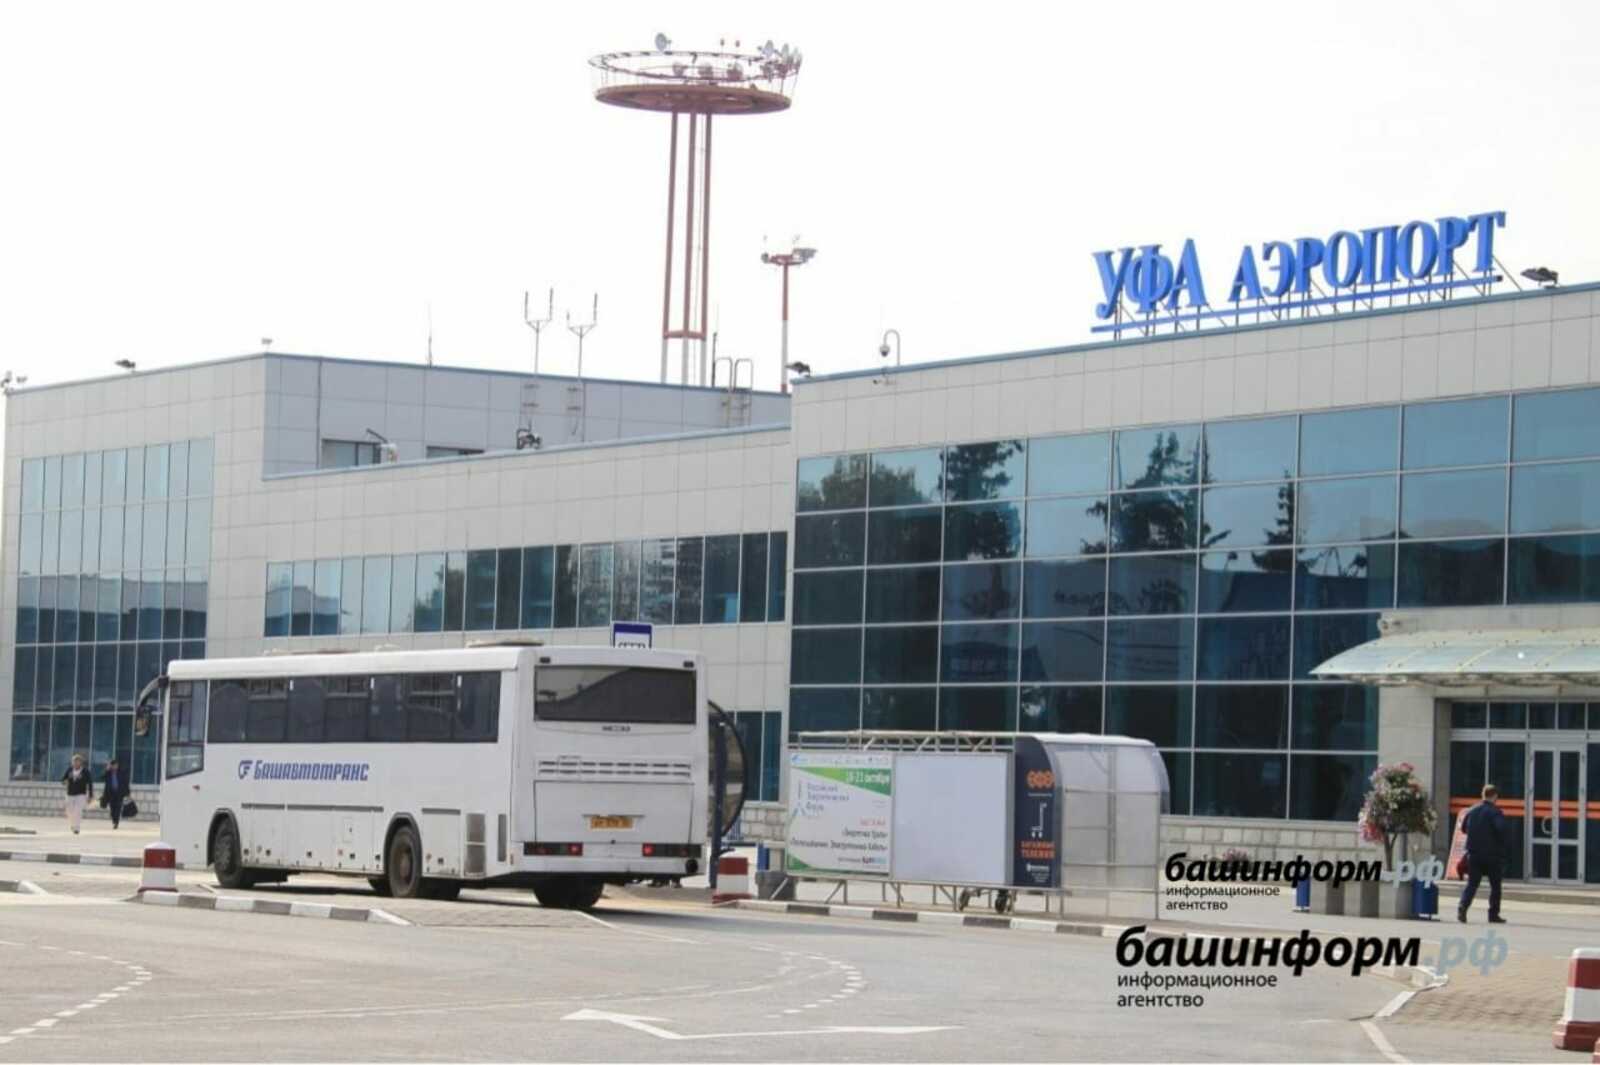 Открыть новое авиасообщение между Уфой и Актау разрешила Росавиация